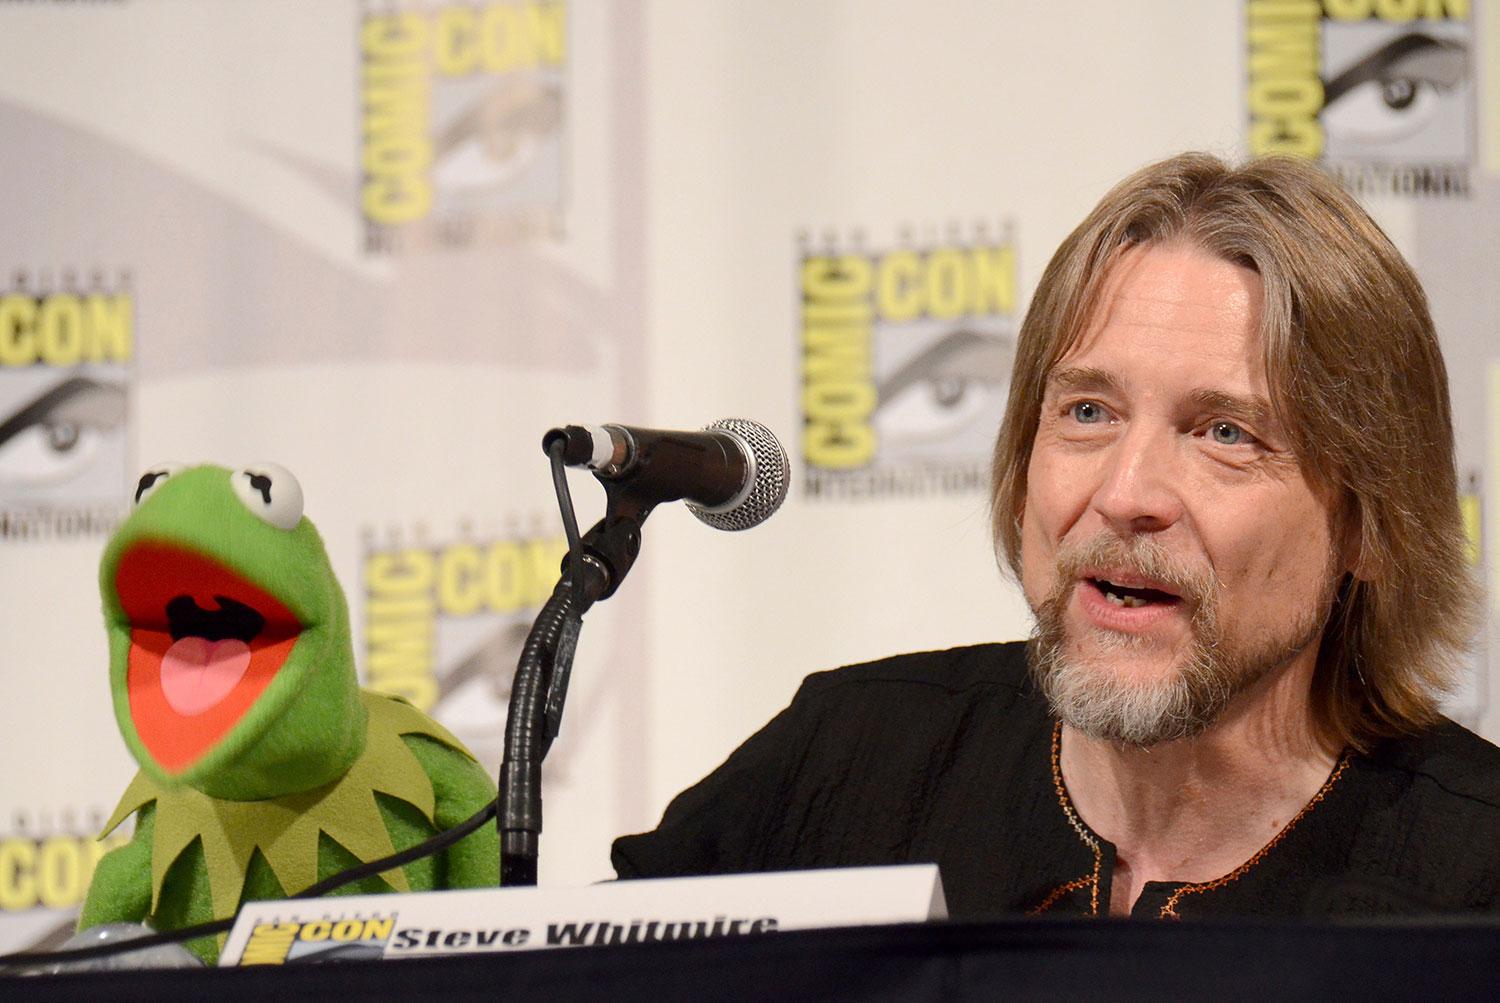 Not easy bein’ green. I 27 år har Steve Whitmire gett grodan Kermit en röst. Nu får han sparken.